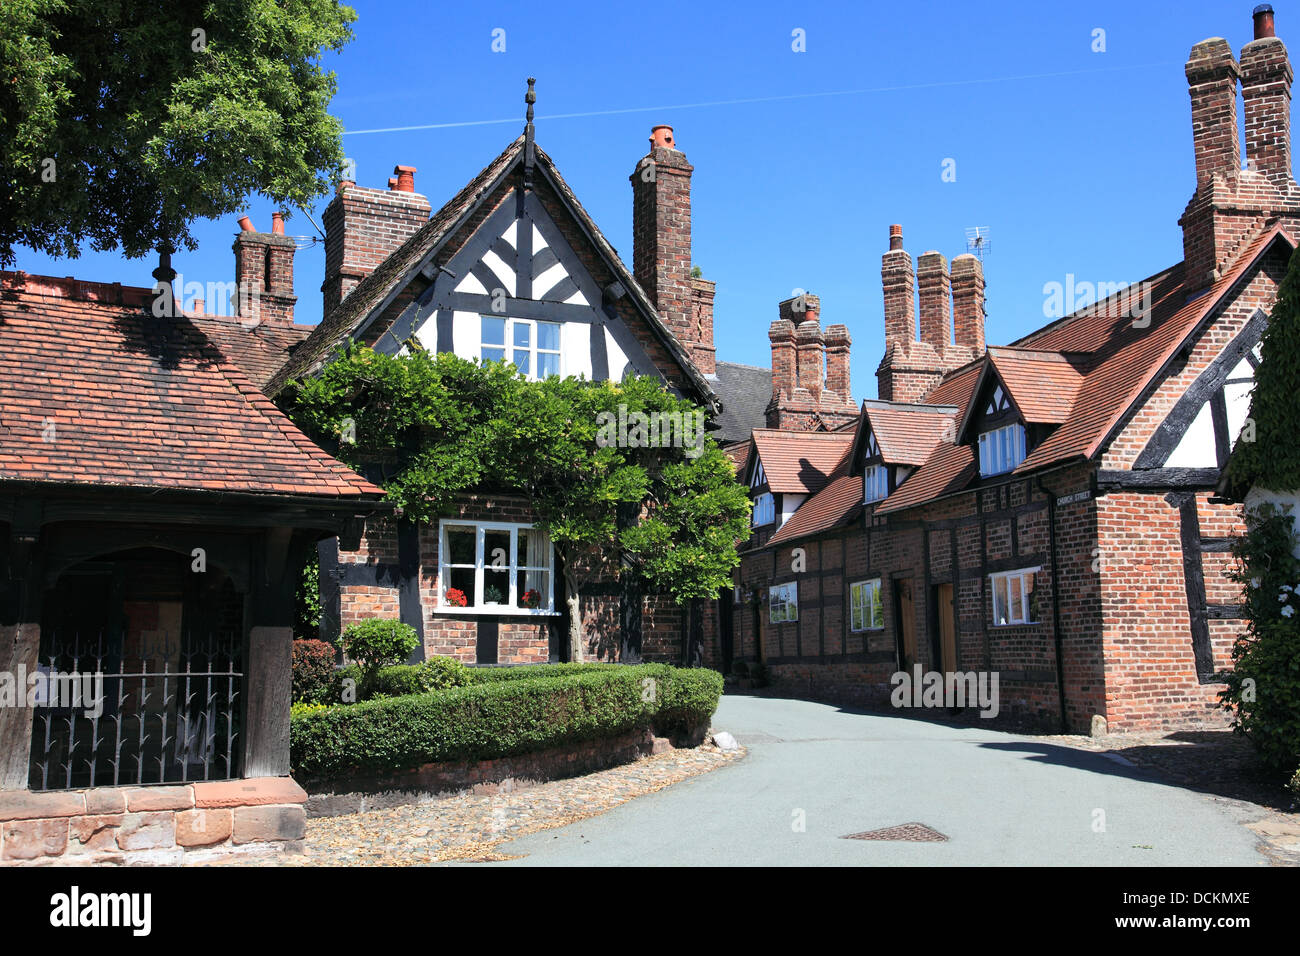 Church Street nel grazioso villaggio di grande Budworth, vicino a Northwich, Cheshire, nota per i suoi pittoreschi edifici. Foto Stock